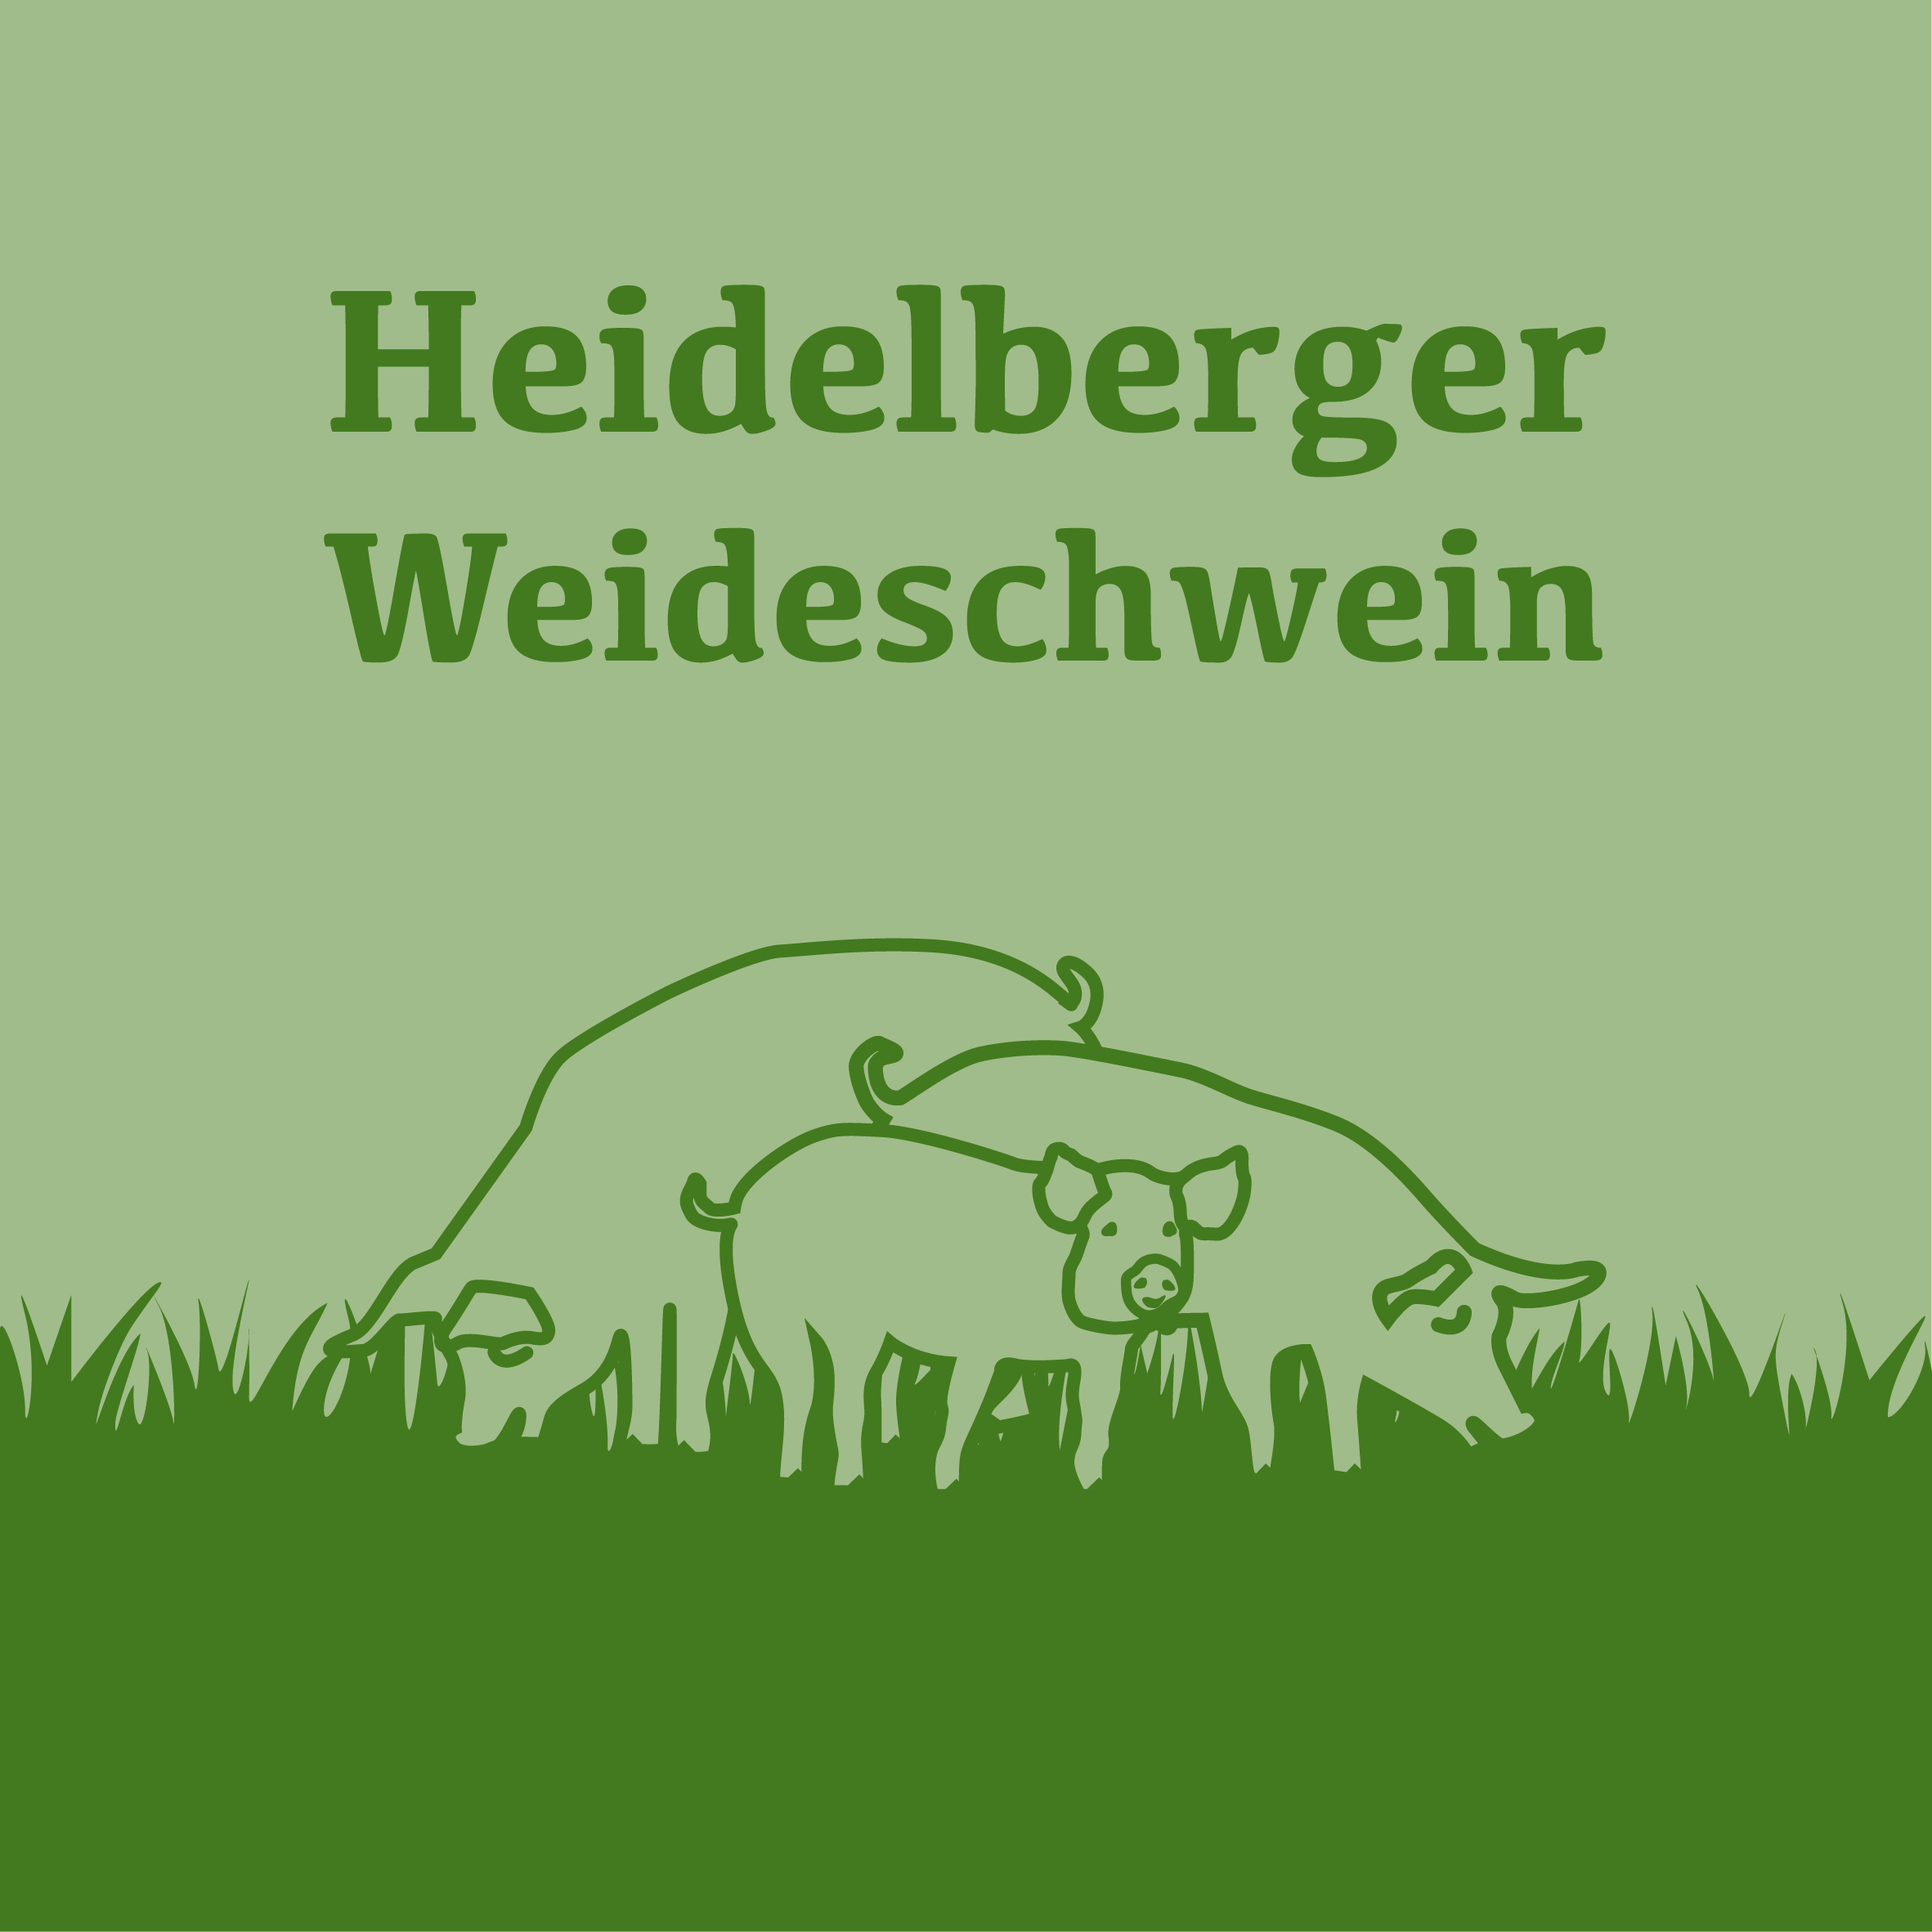 Das Heidelberger Weideschwein vom Bauernhof Koch